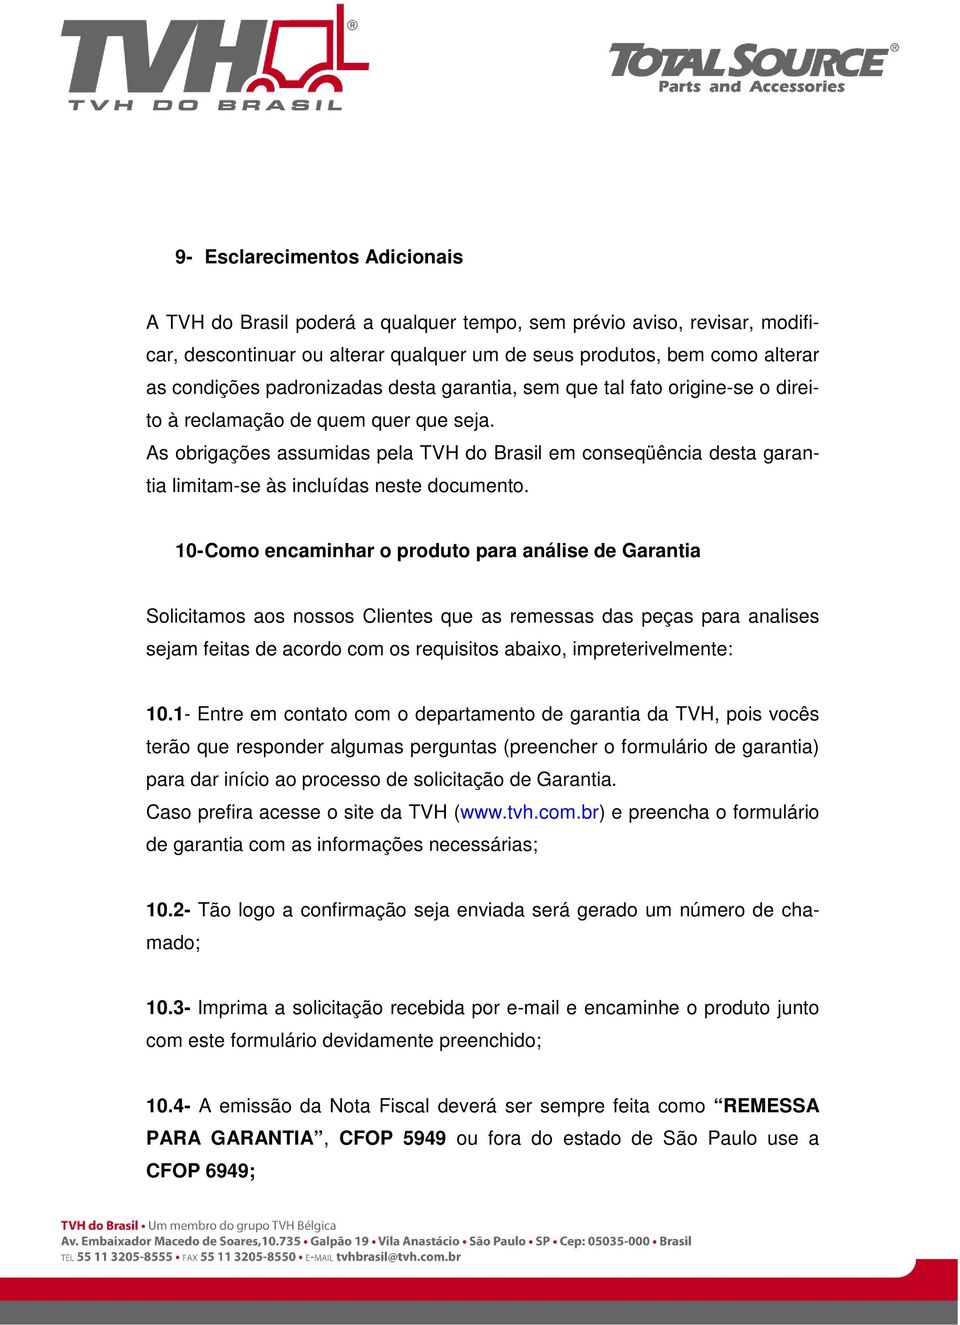 As obrigações assumidas pela TVH do Brasil em conseqüência desta garantia limitam-se às incluídas neste documento.